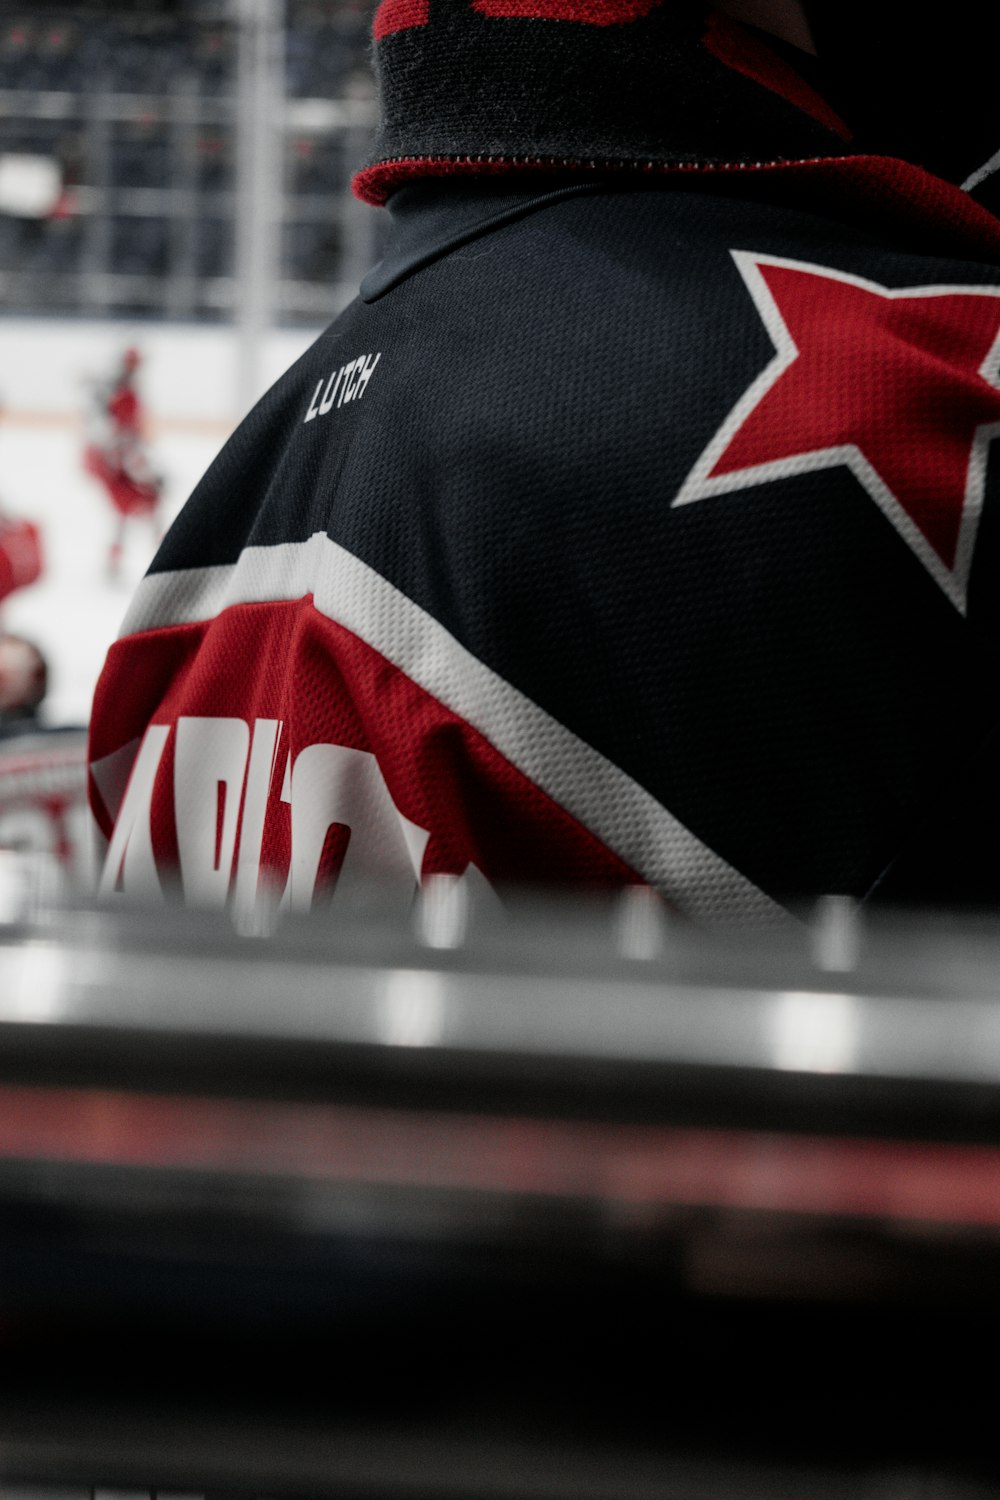 Un jugador de hockey con una camiseta de la estrella roja